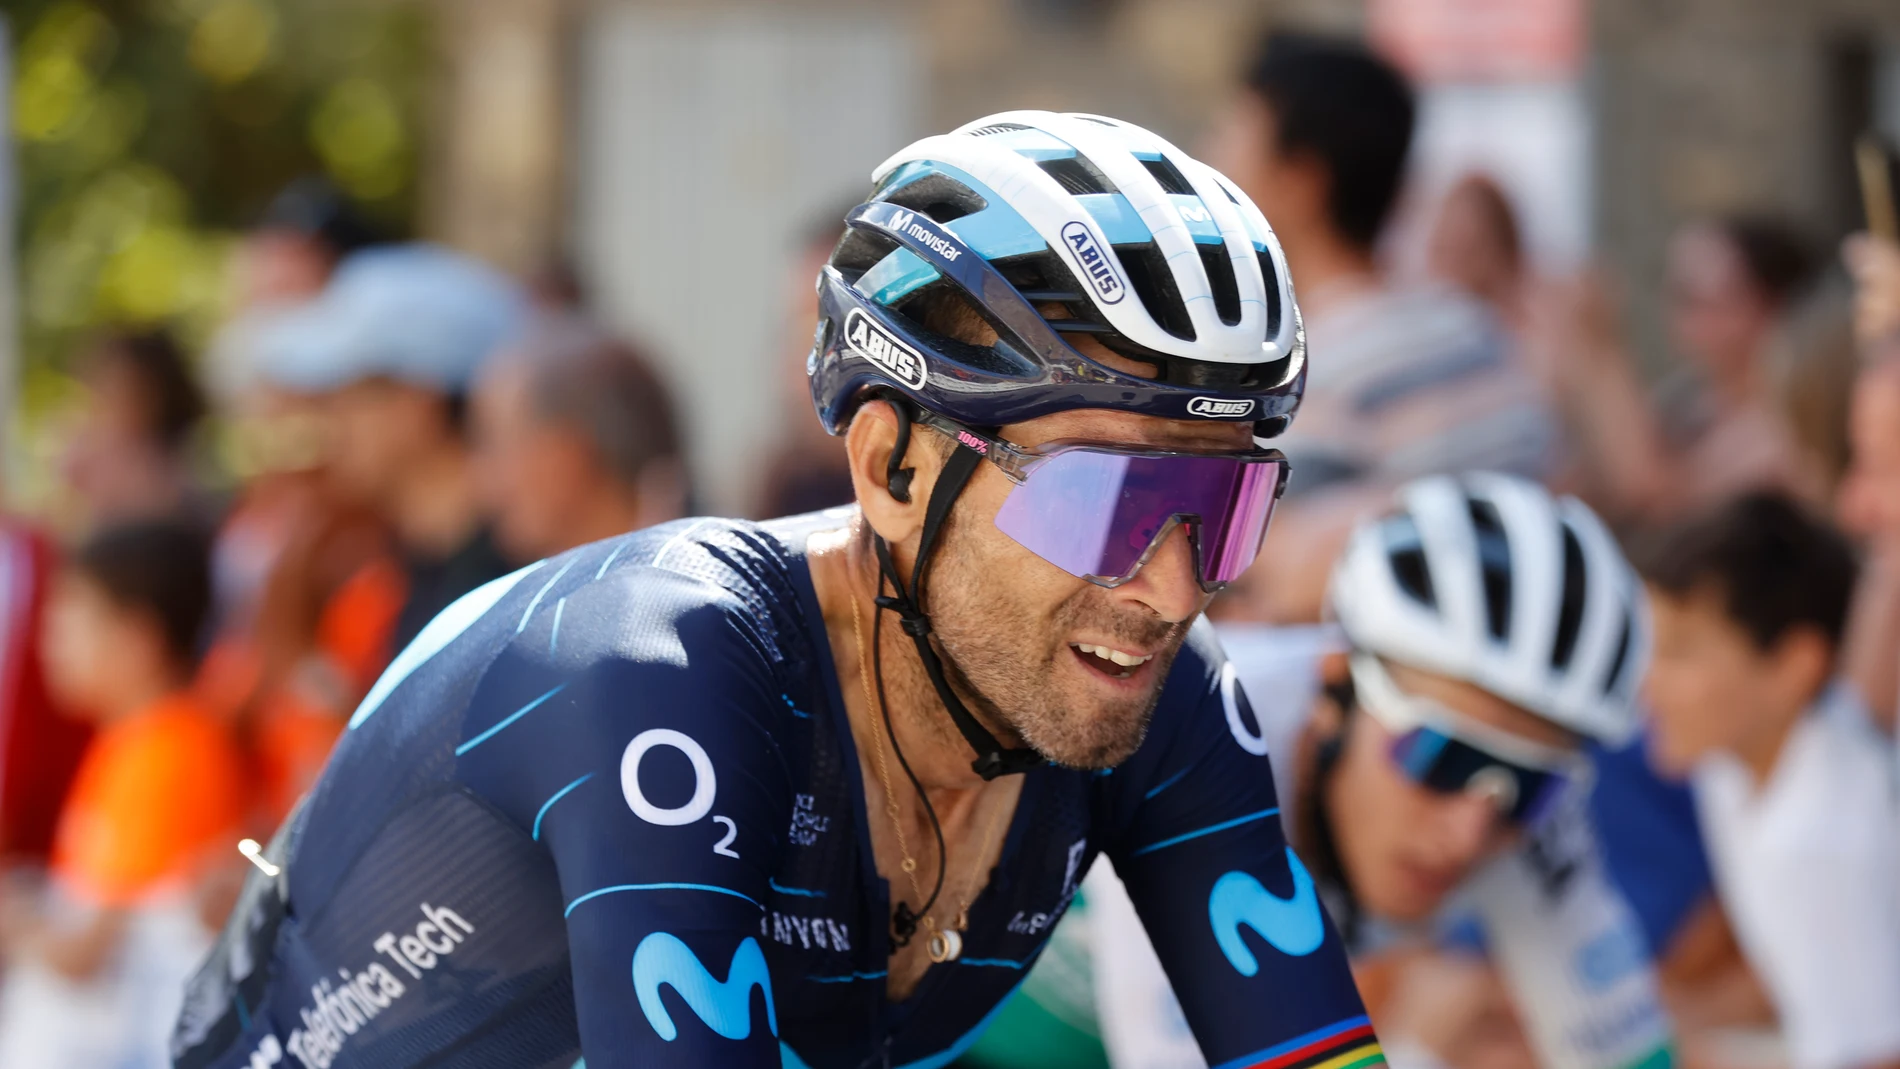 Valverde, con un objetivo claro en su última Vuelta a España: "Ya no puedo con los de general, pero lucharemos alguna